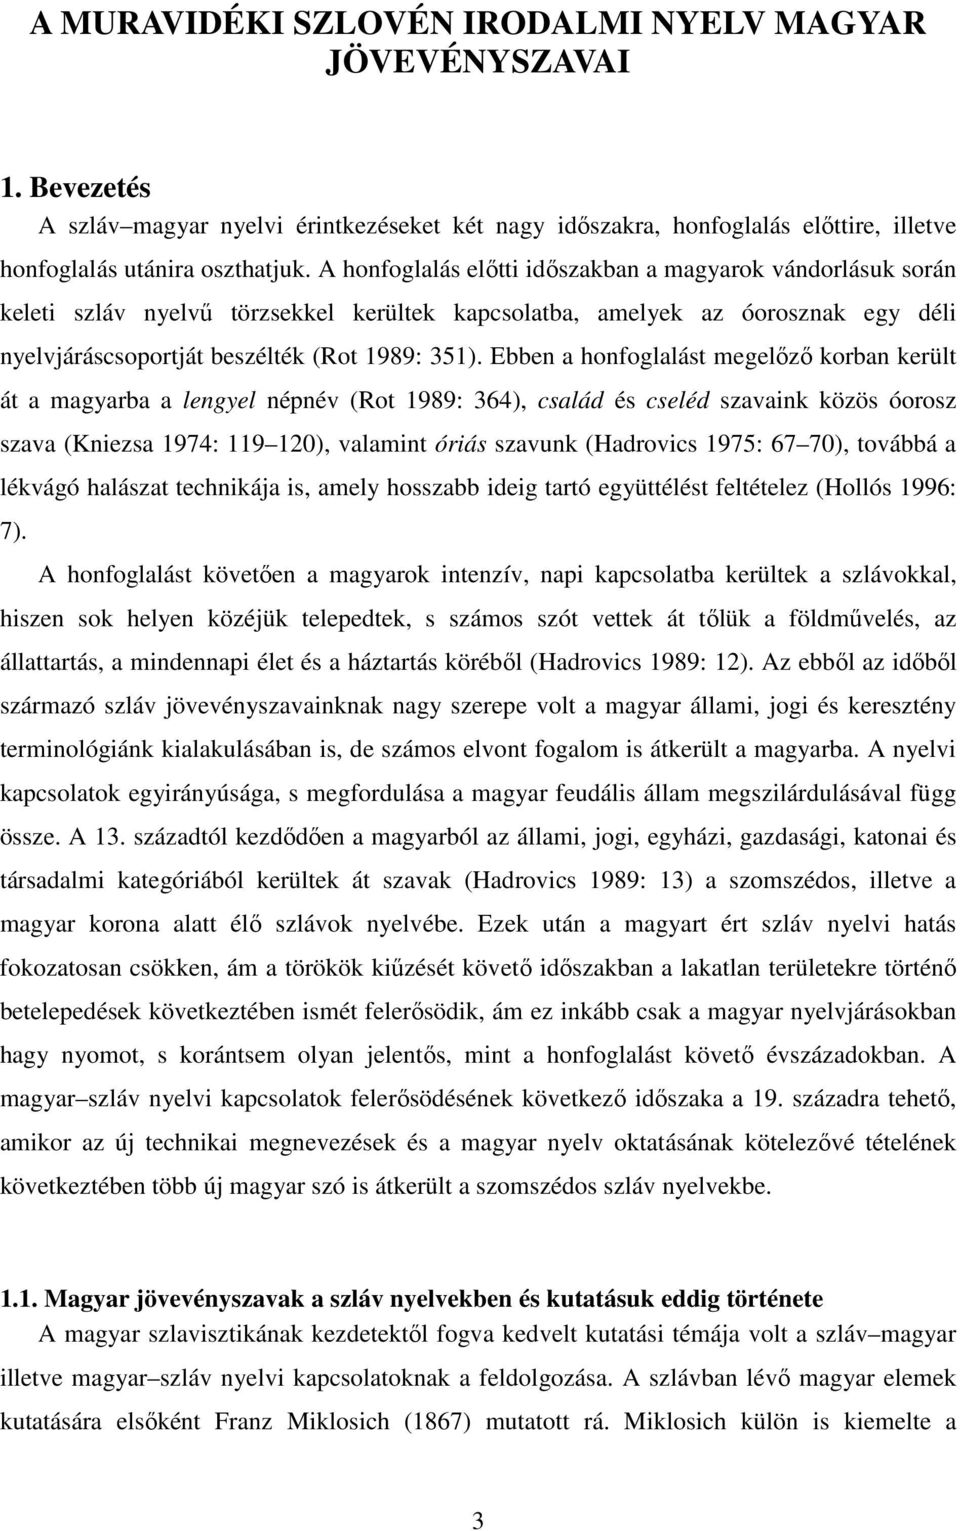 Ebben a honfoglalást megelőző korban került át a magyarba a lengyel népnév (Rot 1989: 364), család és cseléd szavaink közös óorosz szava (Kniezsa 1974: 119 120), valamint óriás szavunk (Hadrovics